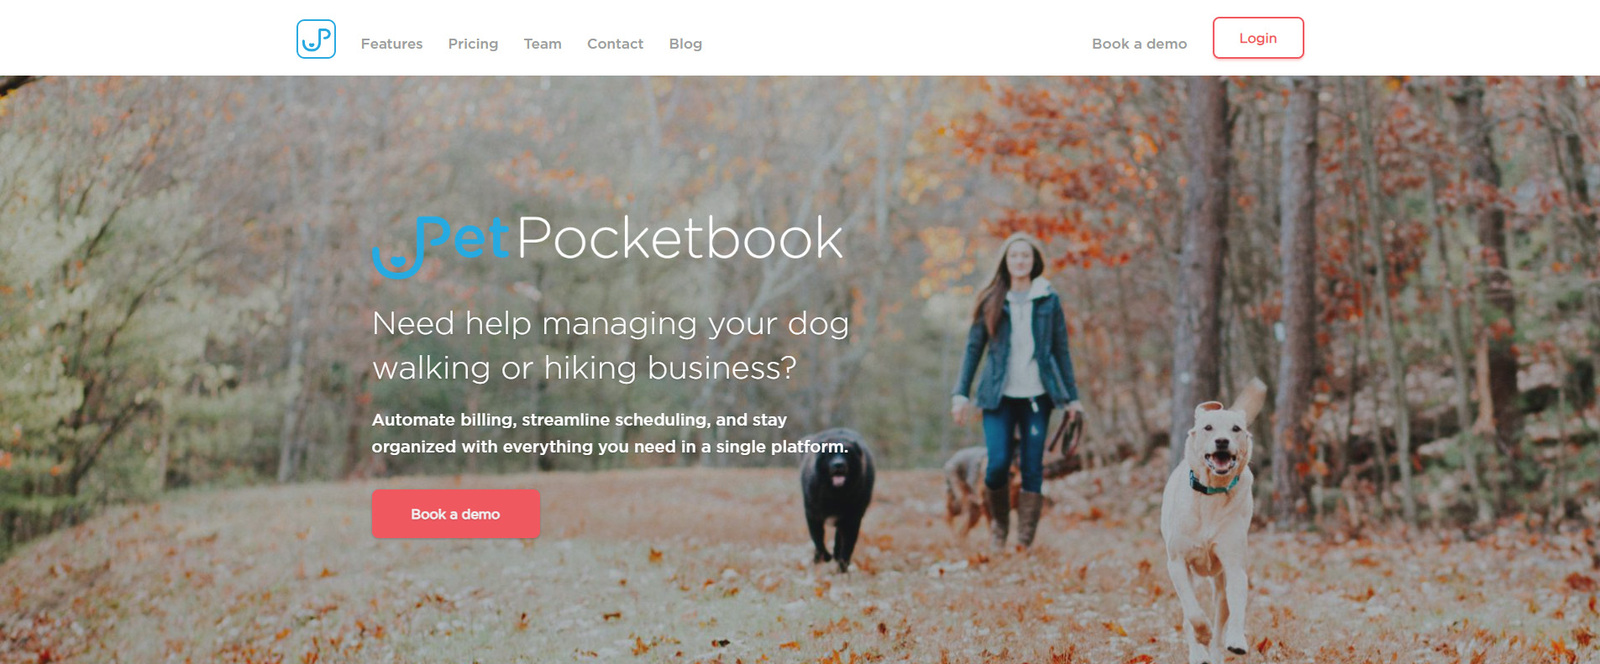 Обзор PetPocketbook, одного из лучших программ по уходу за домашними животными для тех, кто выгуливает их.